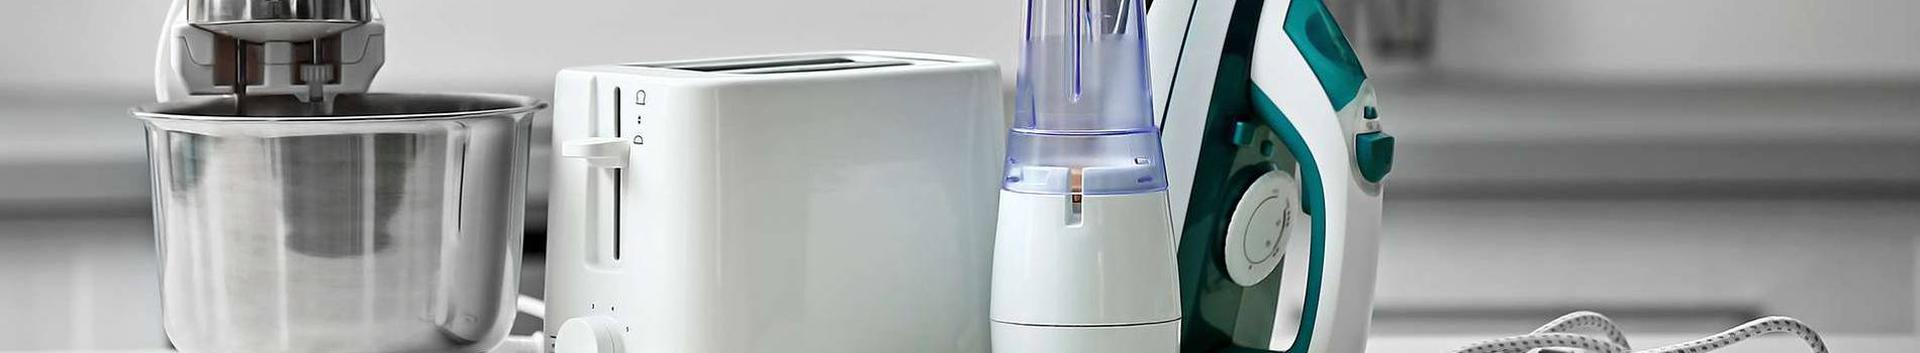 Kompaktne ja turvaline kodus kasutatav veeionisaator. Tervislik ioniseeritud joogivesi kogu perele, mis taastab keha loomulikku tasakaalu.